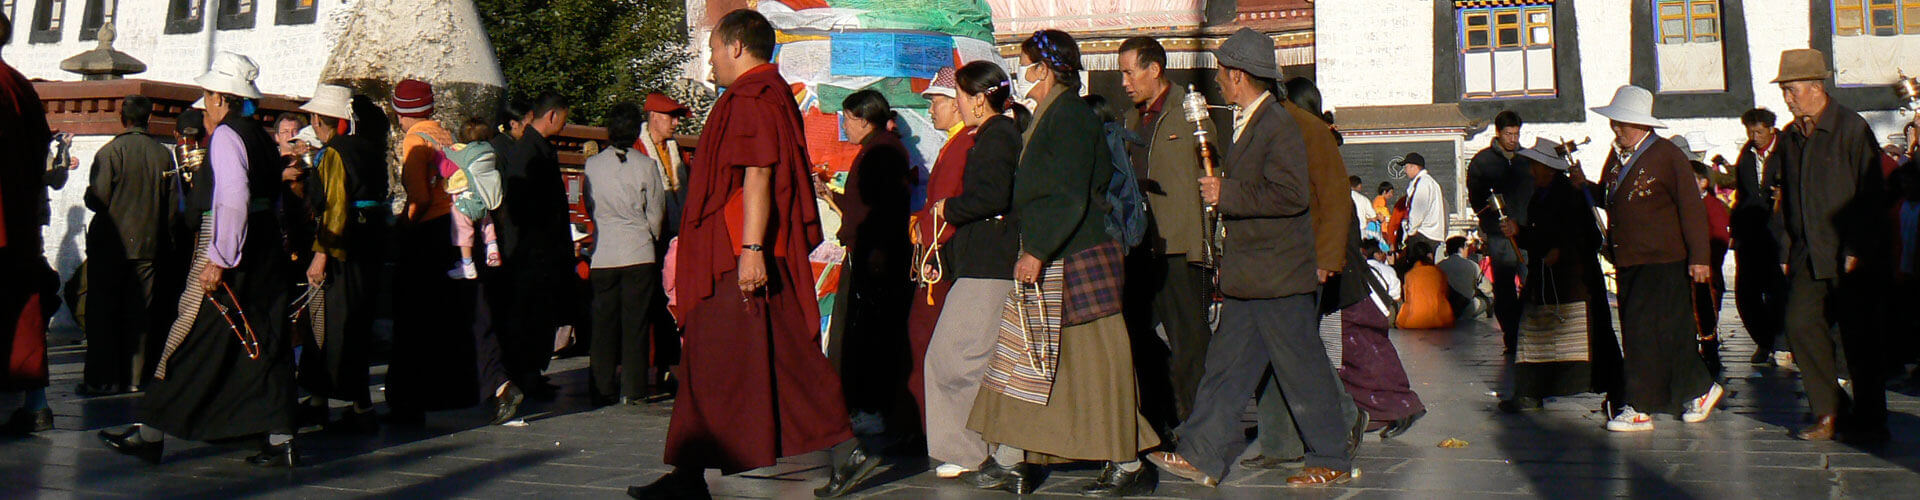 Onbekende kloosters Tibet reis